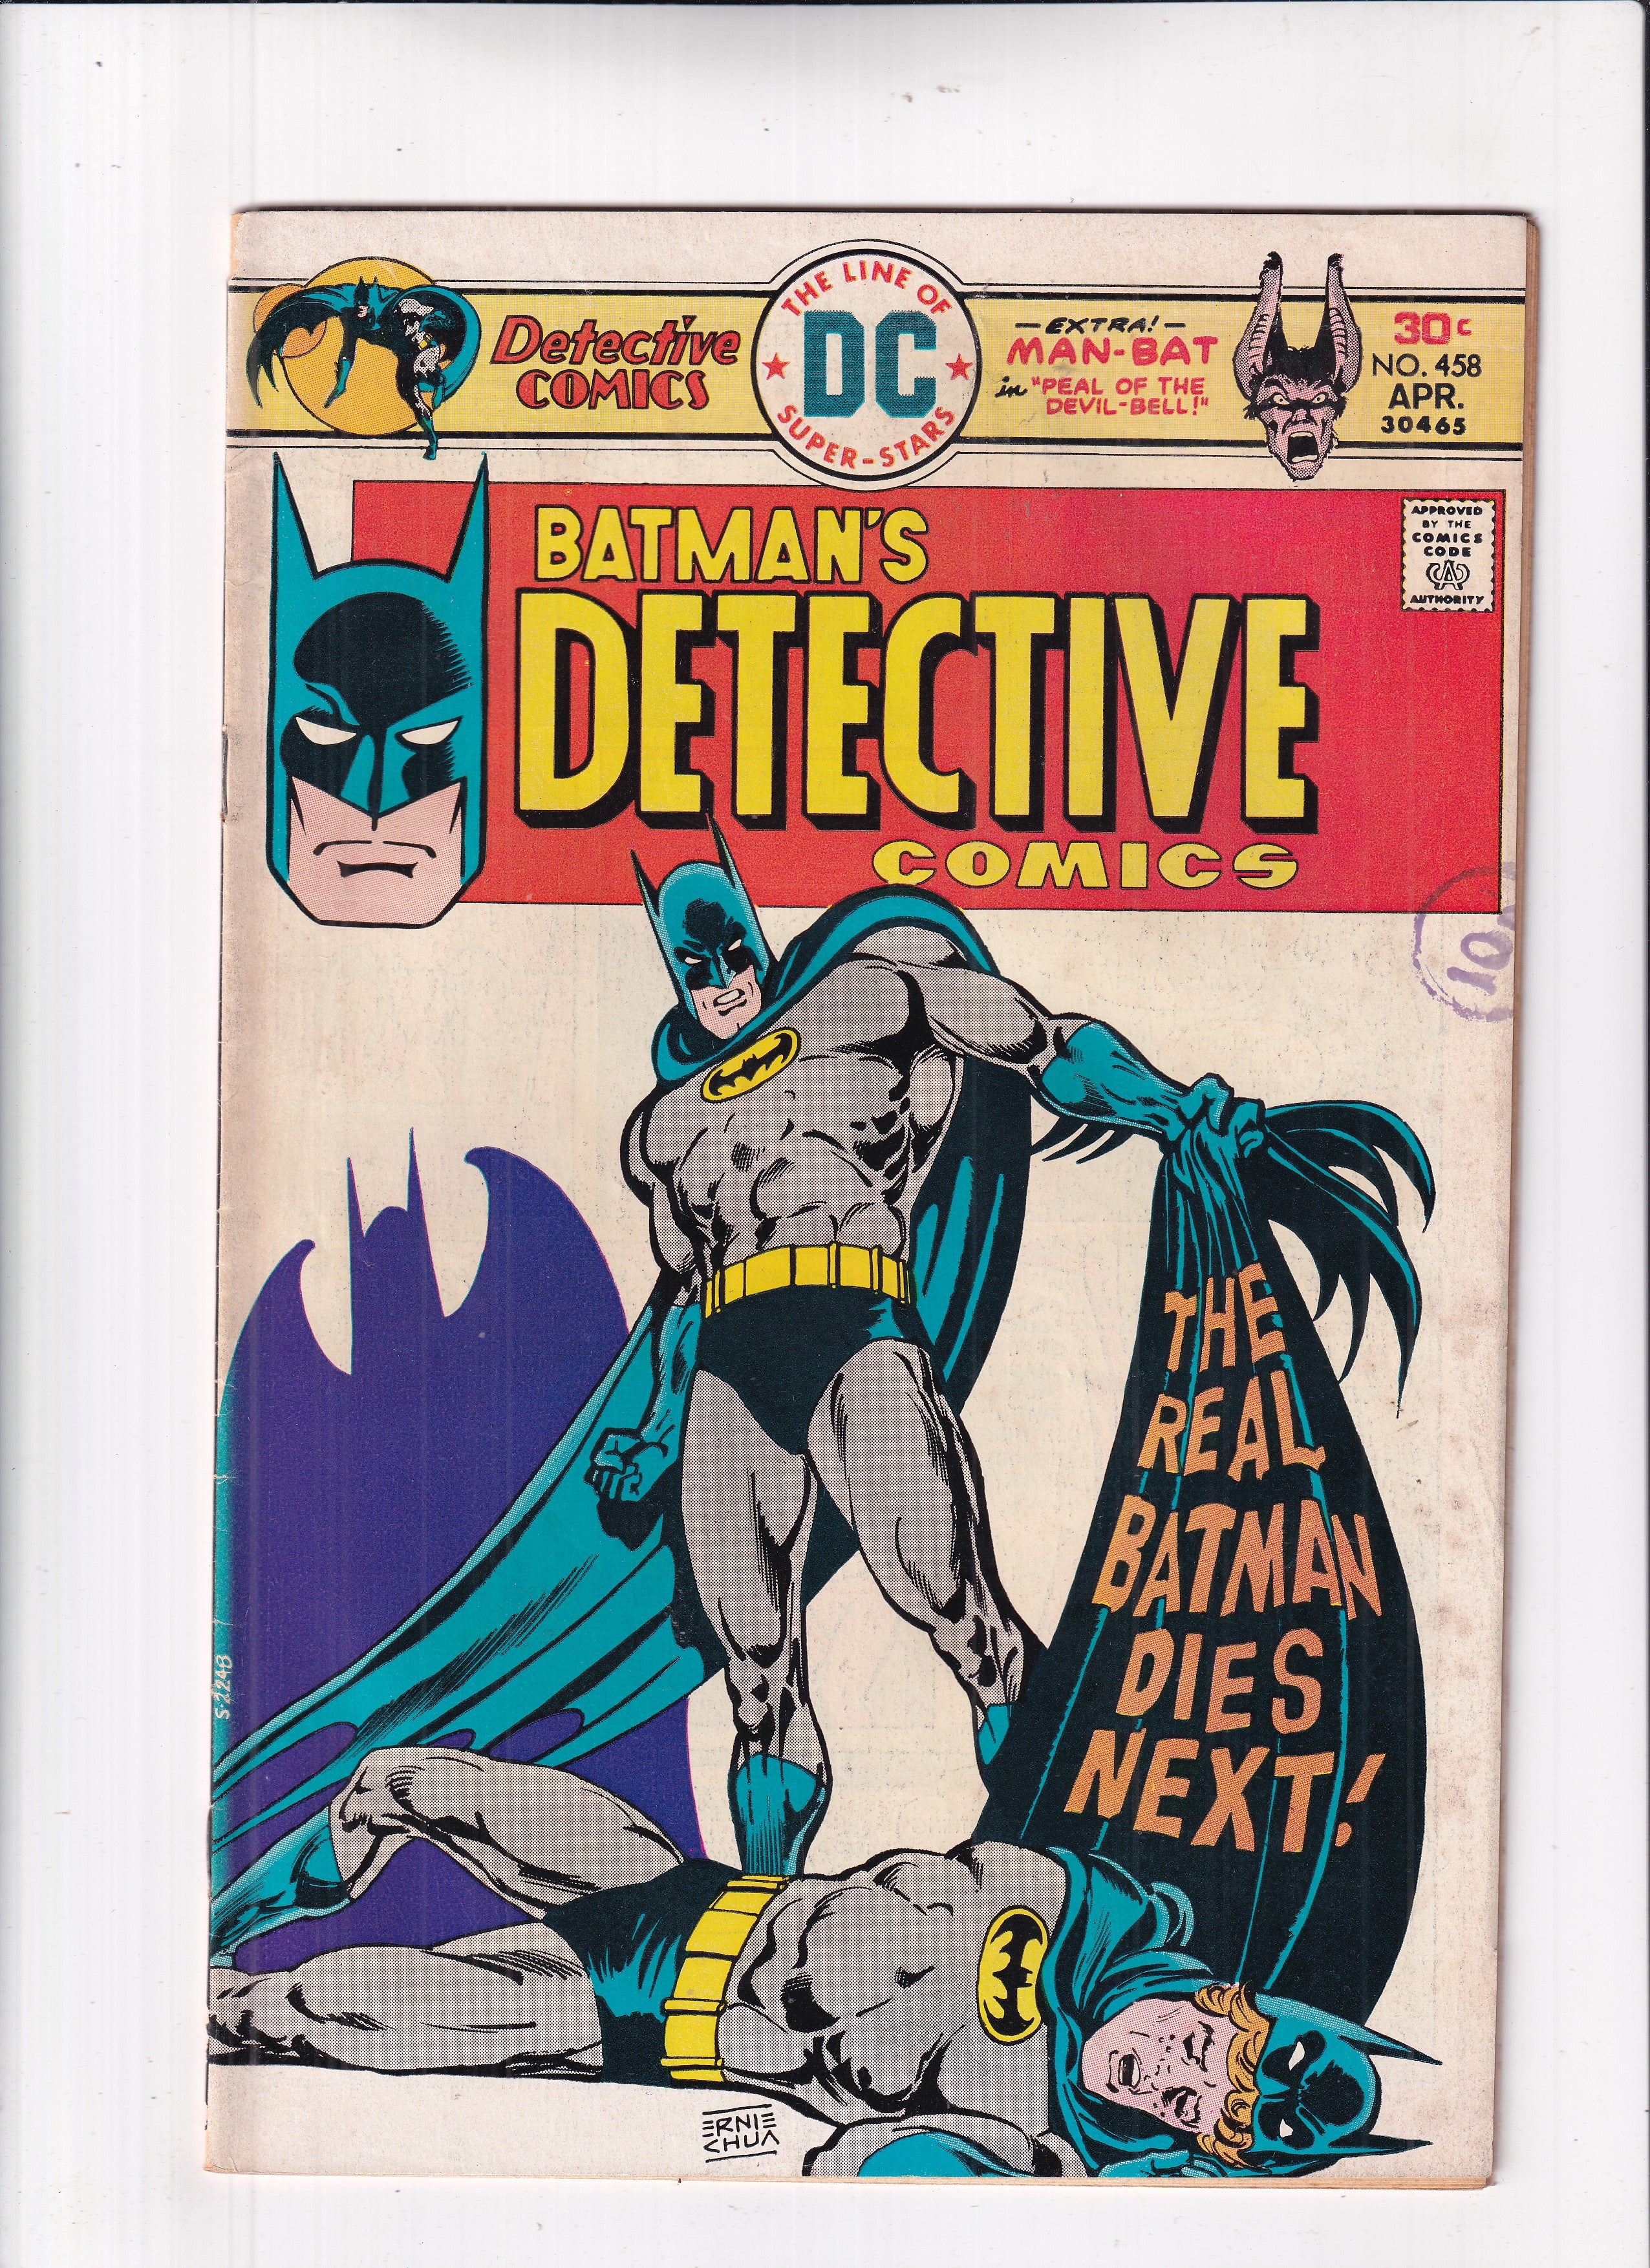 DETECTIVE COMICS #458 - Slab City Comics 